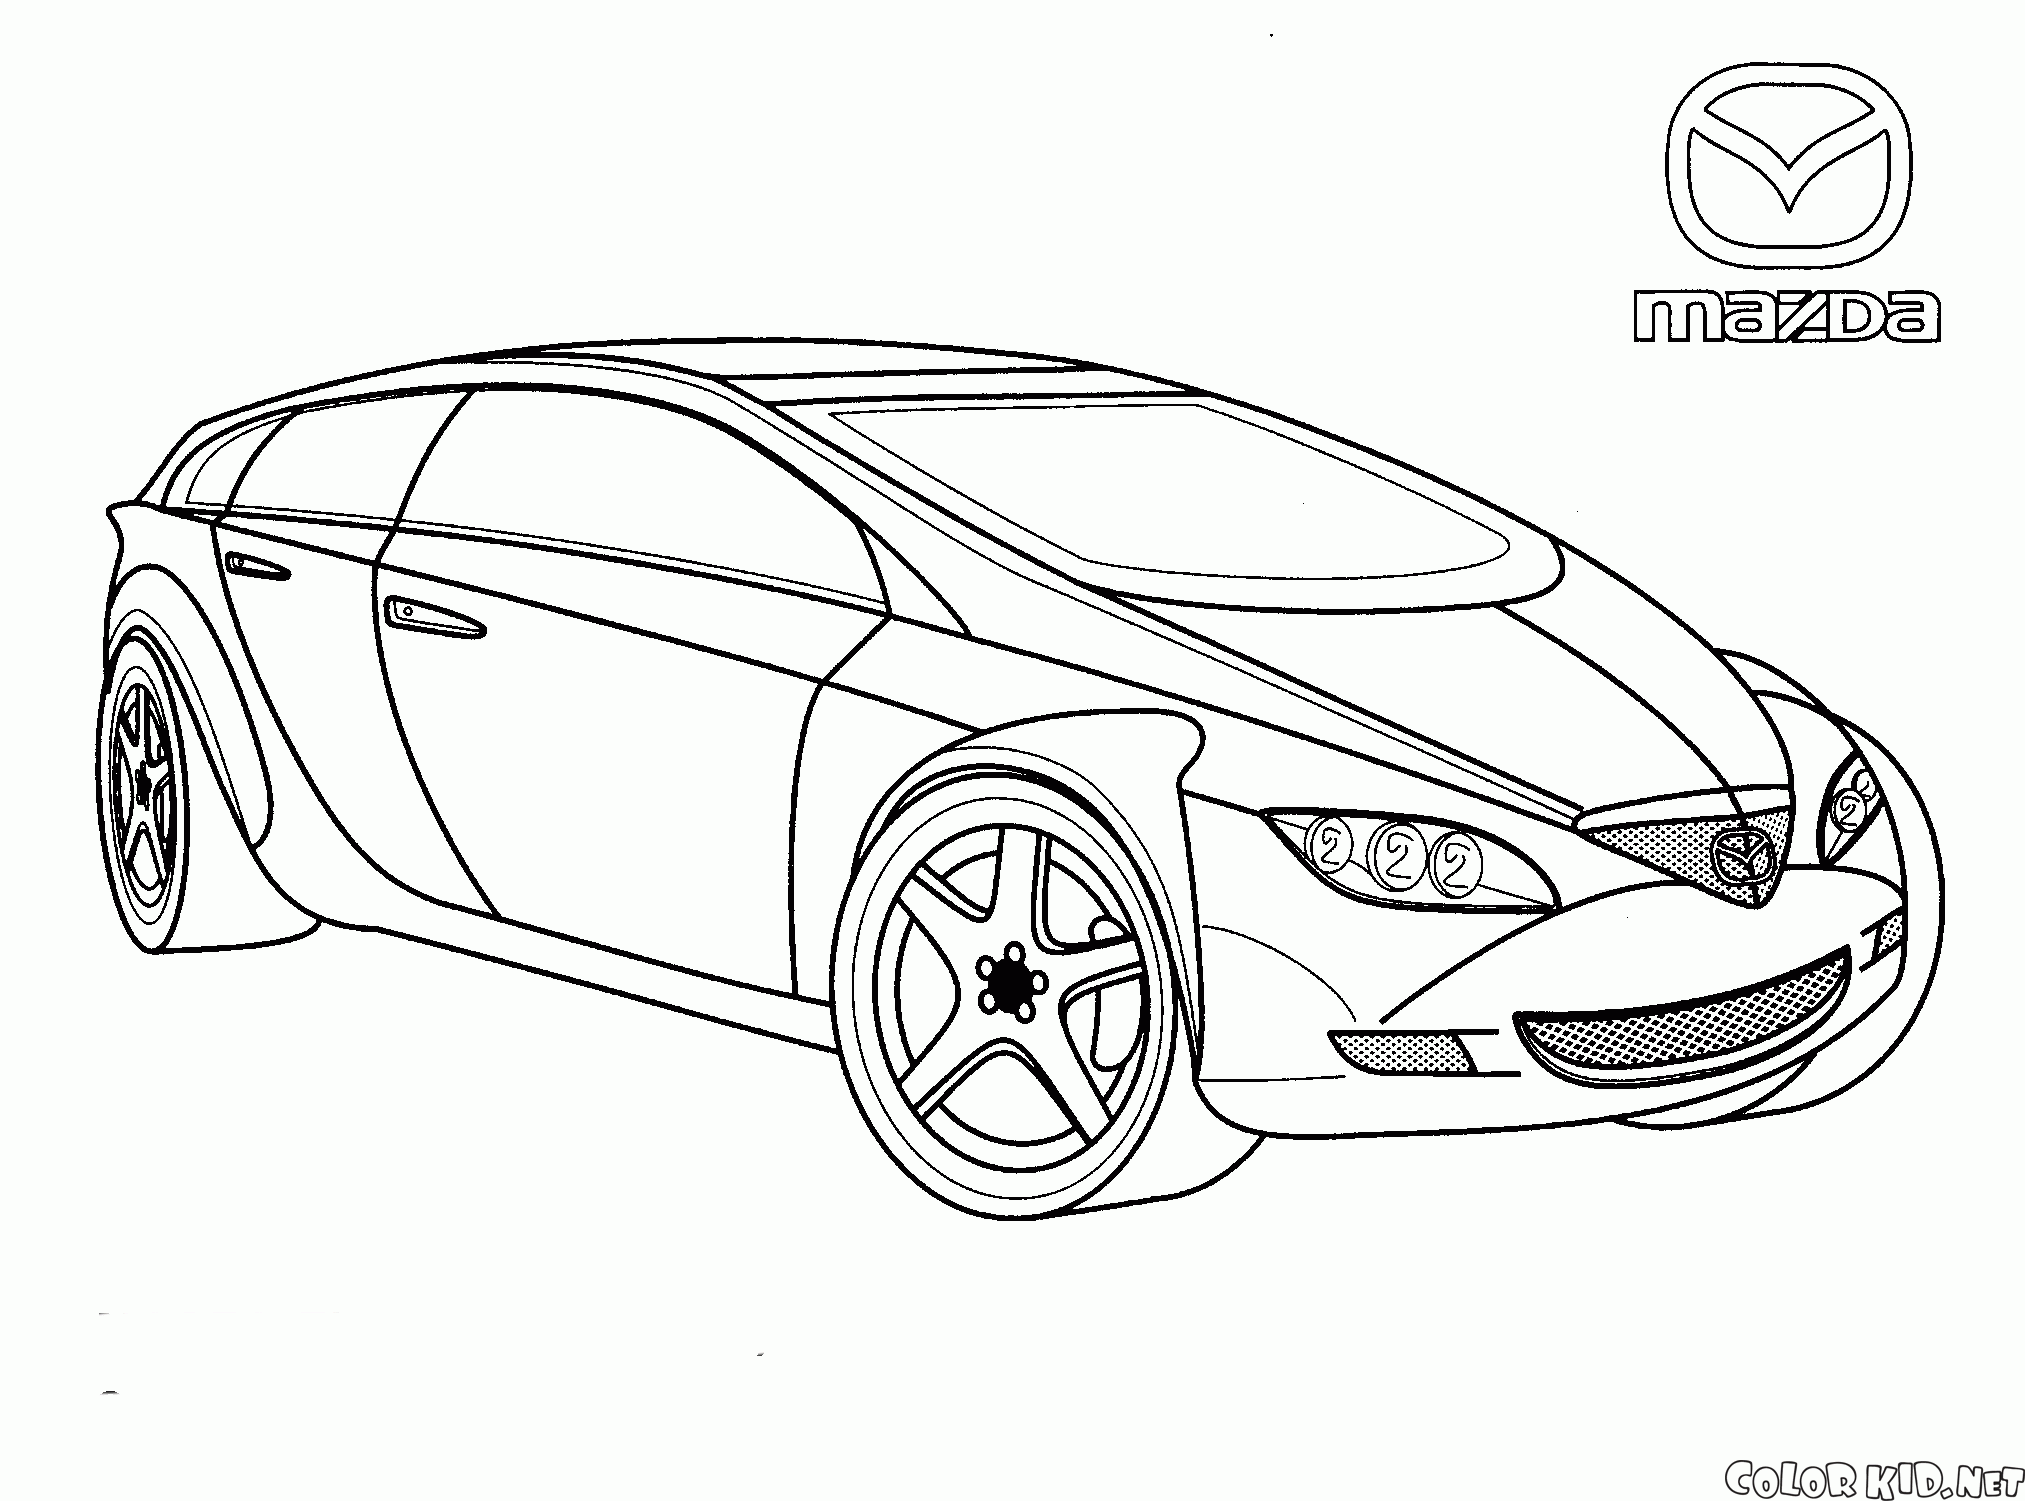 Mazda (Japan)